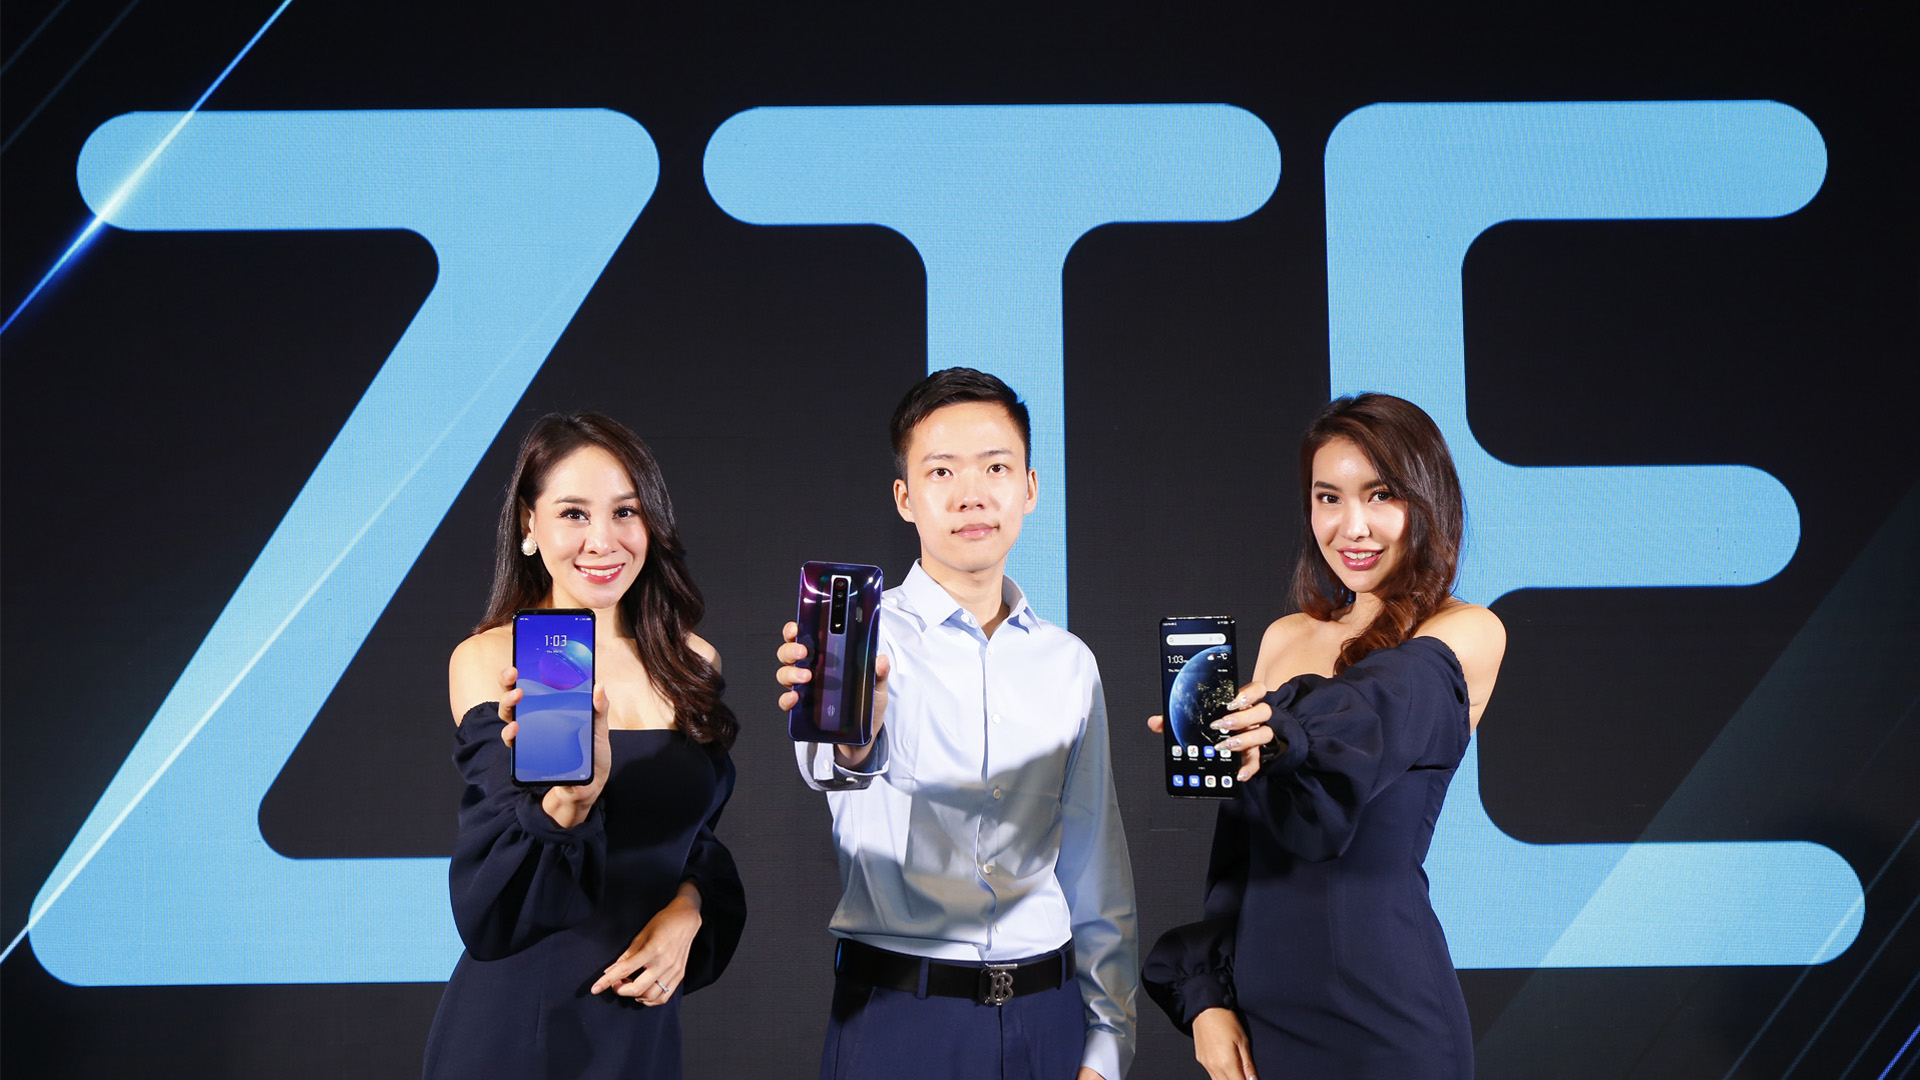 “ZTE” ประกาศบุกตลาดในประเทศไทยด้วยสมาร์ตโฟนครอบคลุมทุกตลาดเปิดตัว 5 สมาร์ตโฟนใหม่